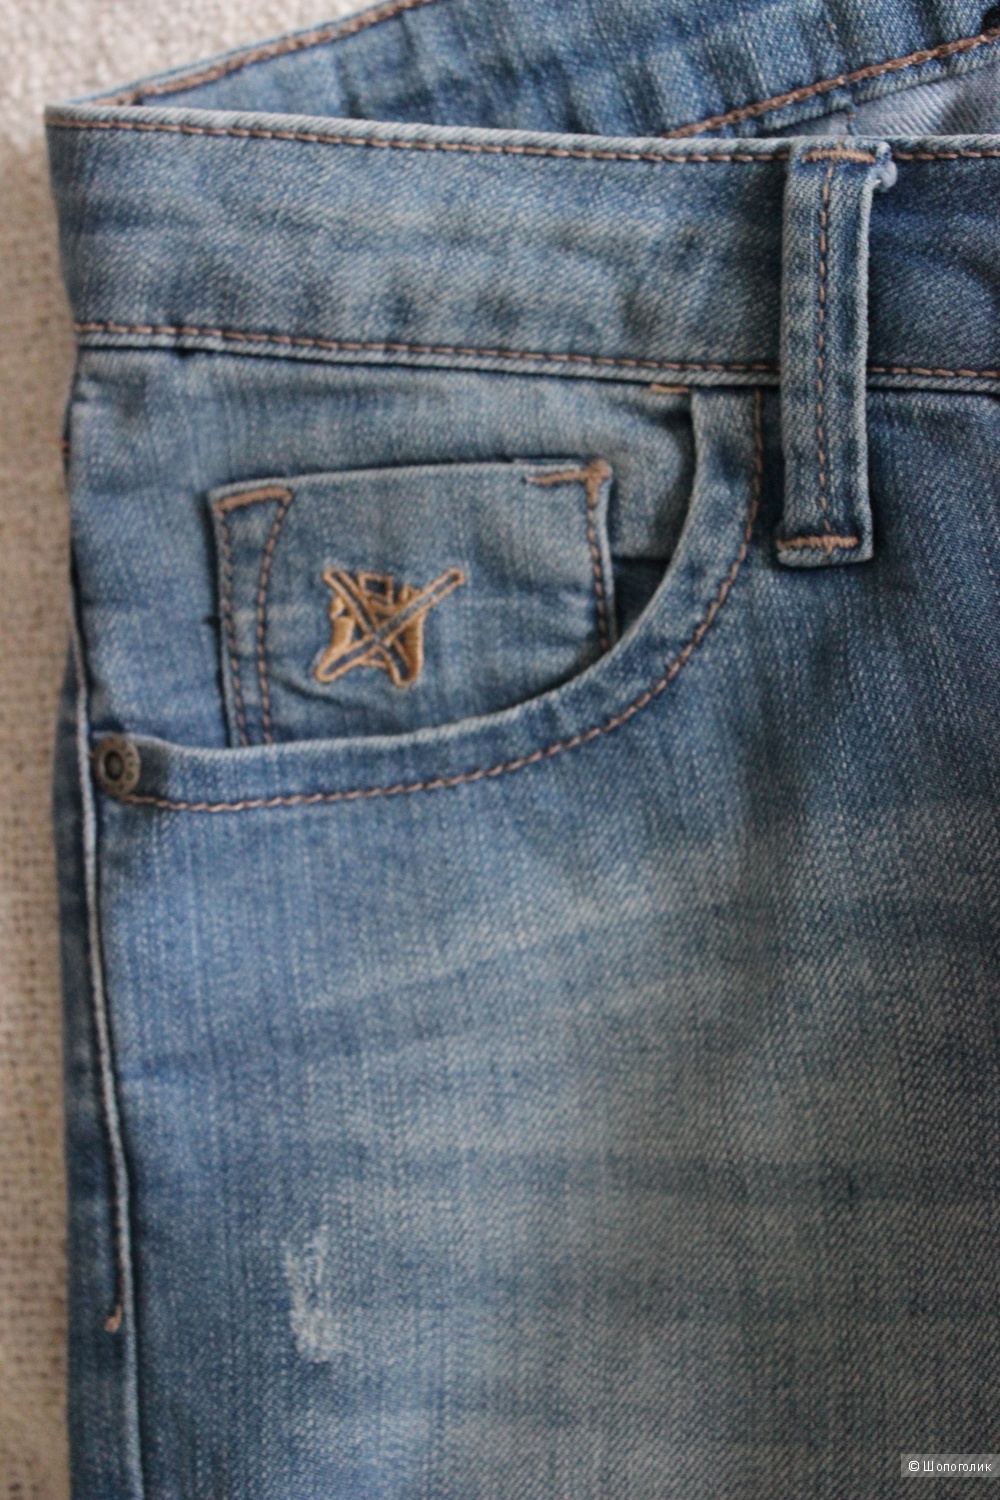 Джинсы BWNY Jeans, Германия, размер 46-48, цвет синий.